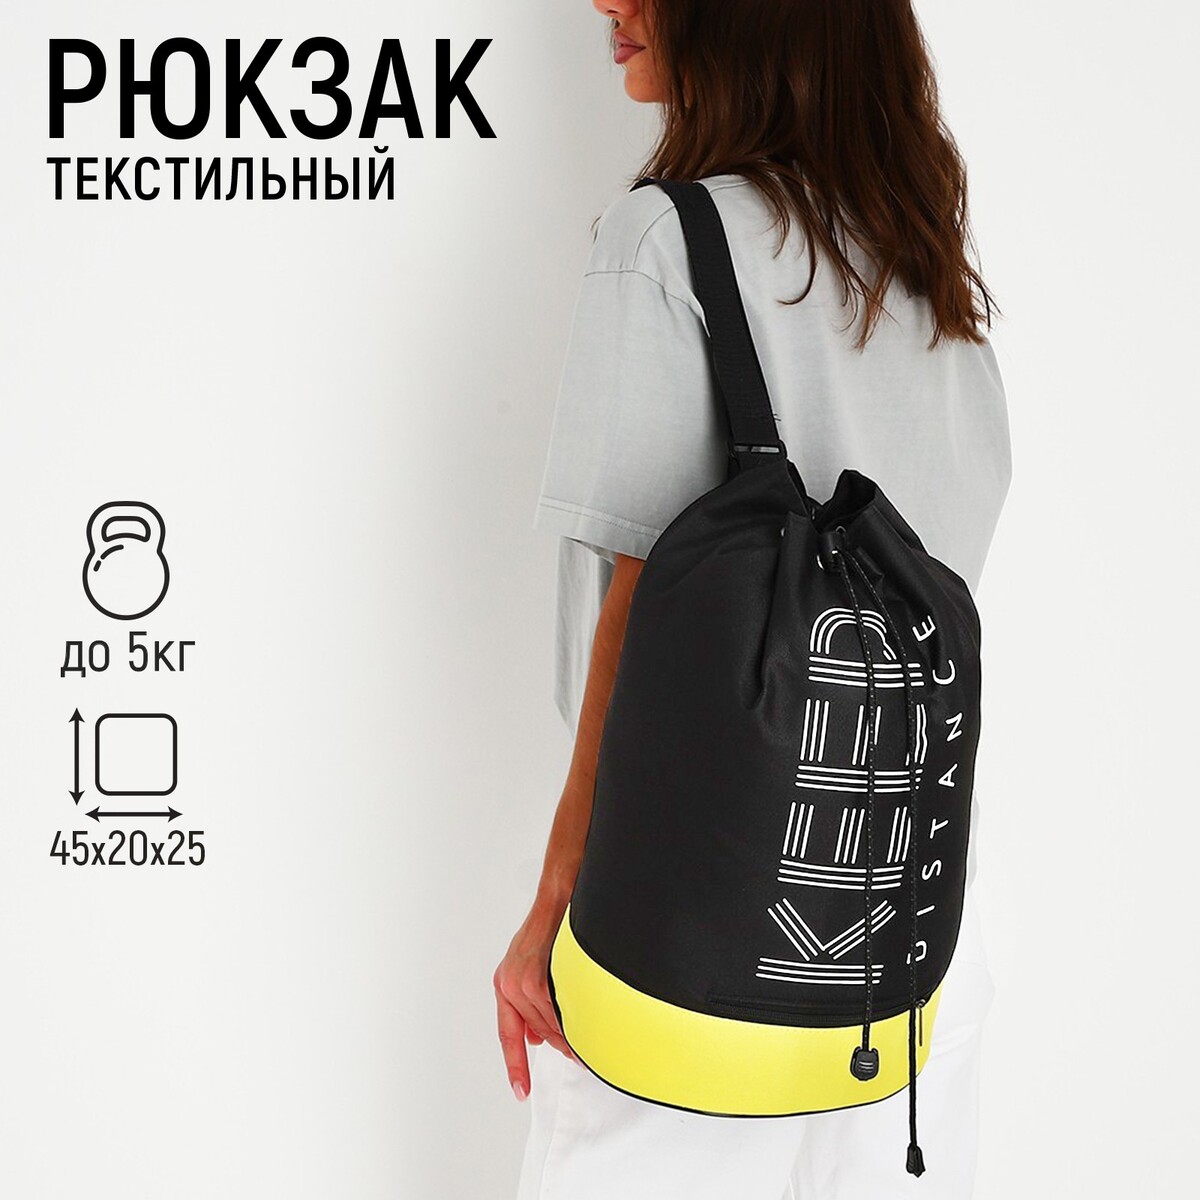 Рюкзак-торба молодежный, отдел на стяжке шнурком, цвет черный/желтый рюкзак торба dark cat 45х20х25 отдел на стяжке шнурком желтый